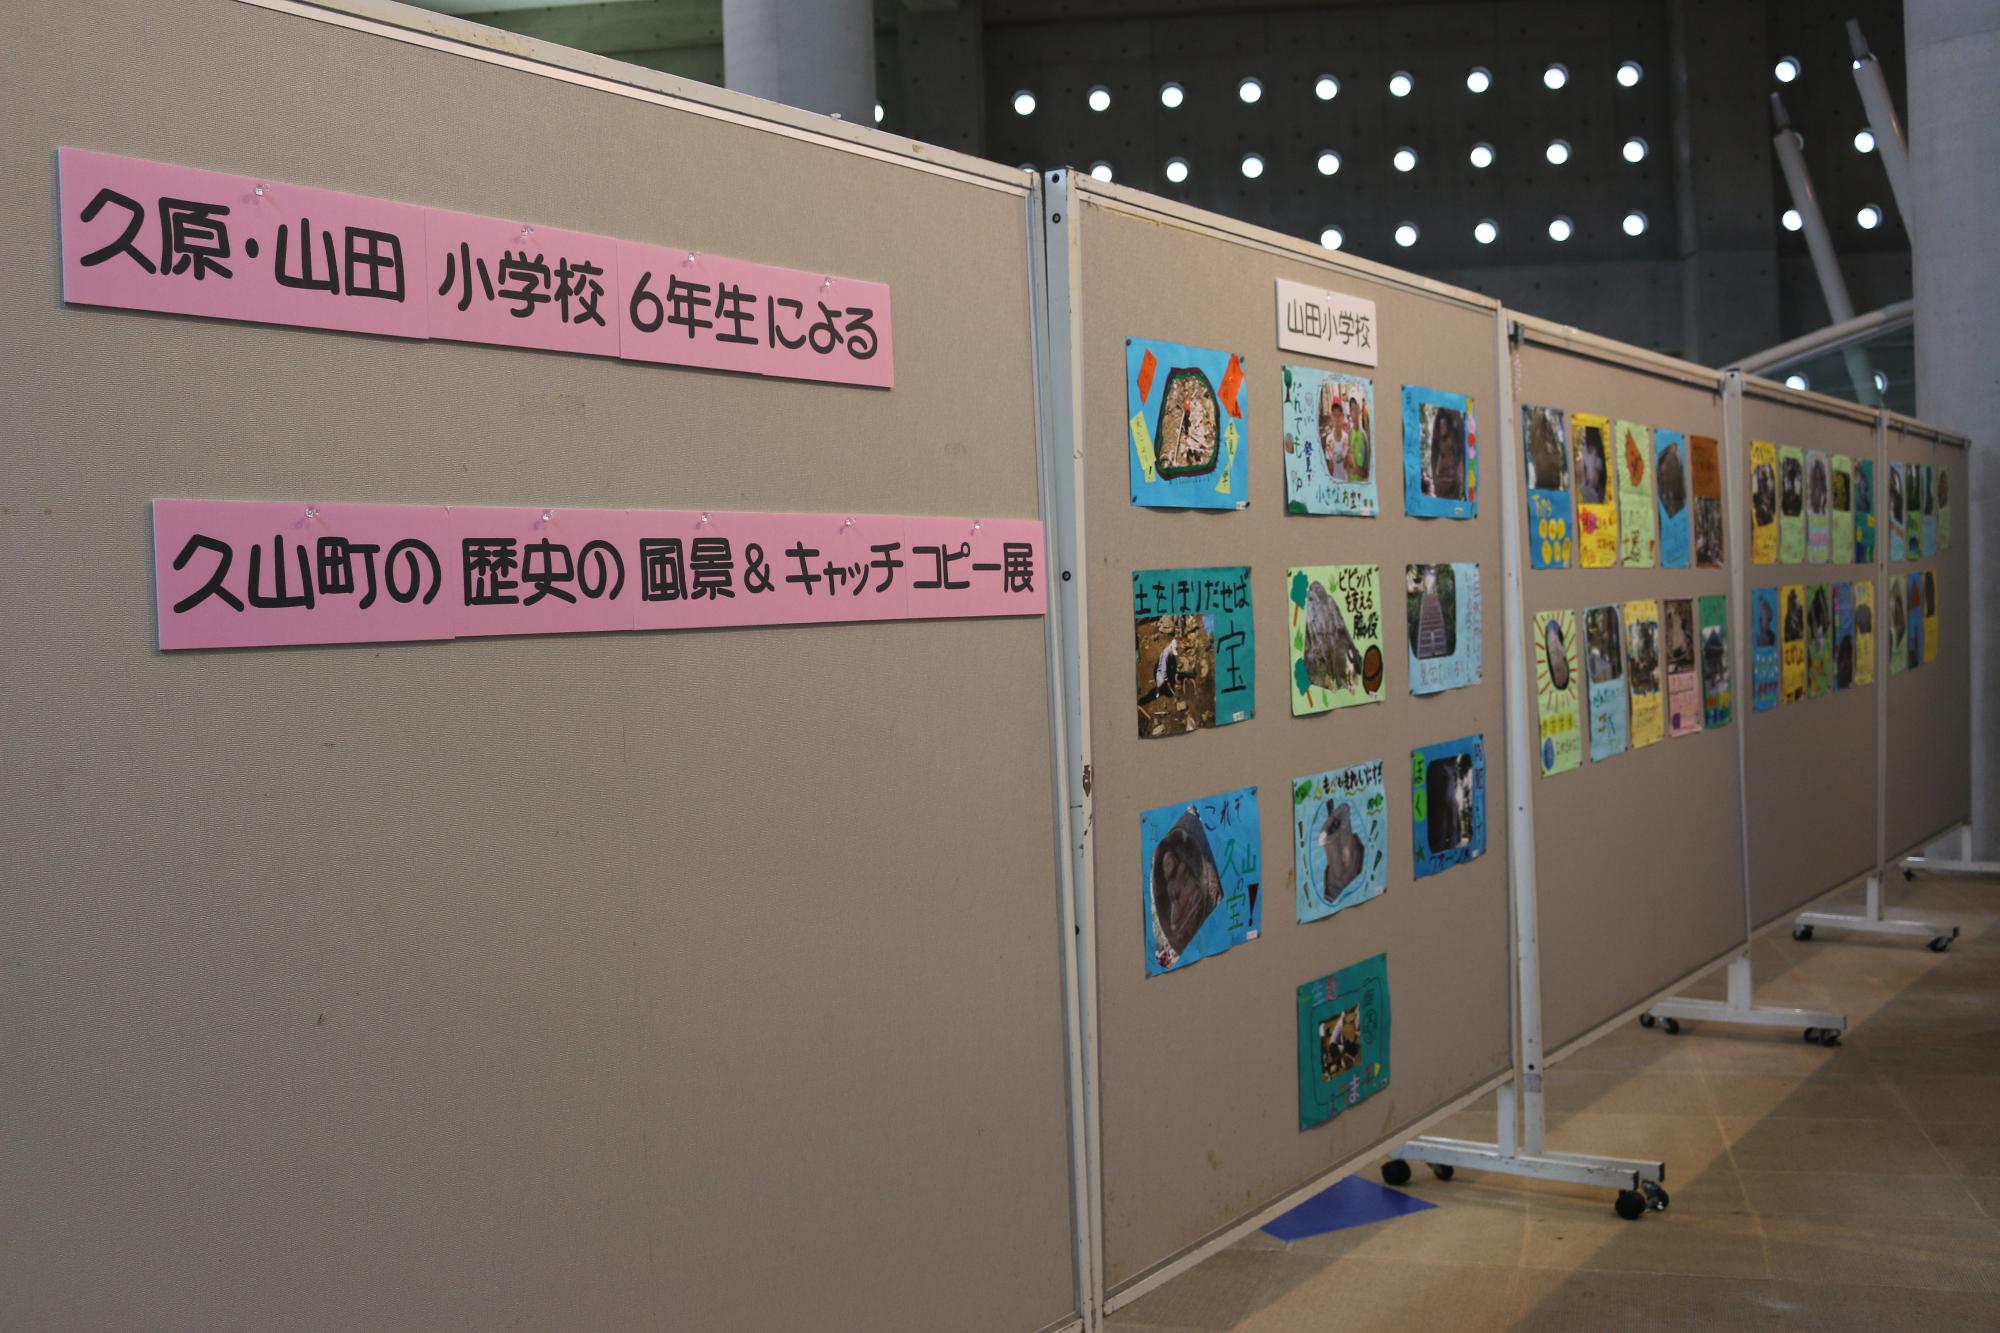 たくさんの作品がボードに貼られている久原・山田小学校6年生による久山町の歴史の風景&キャッチコピー展の写真